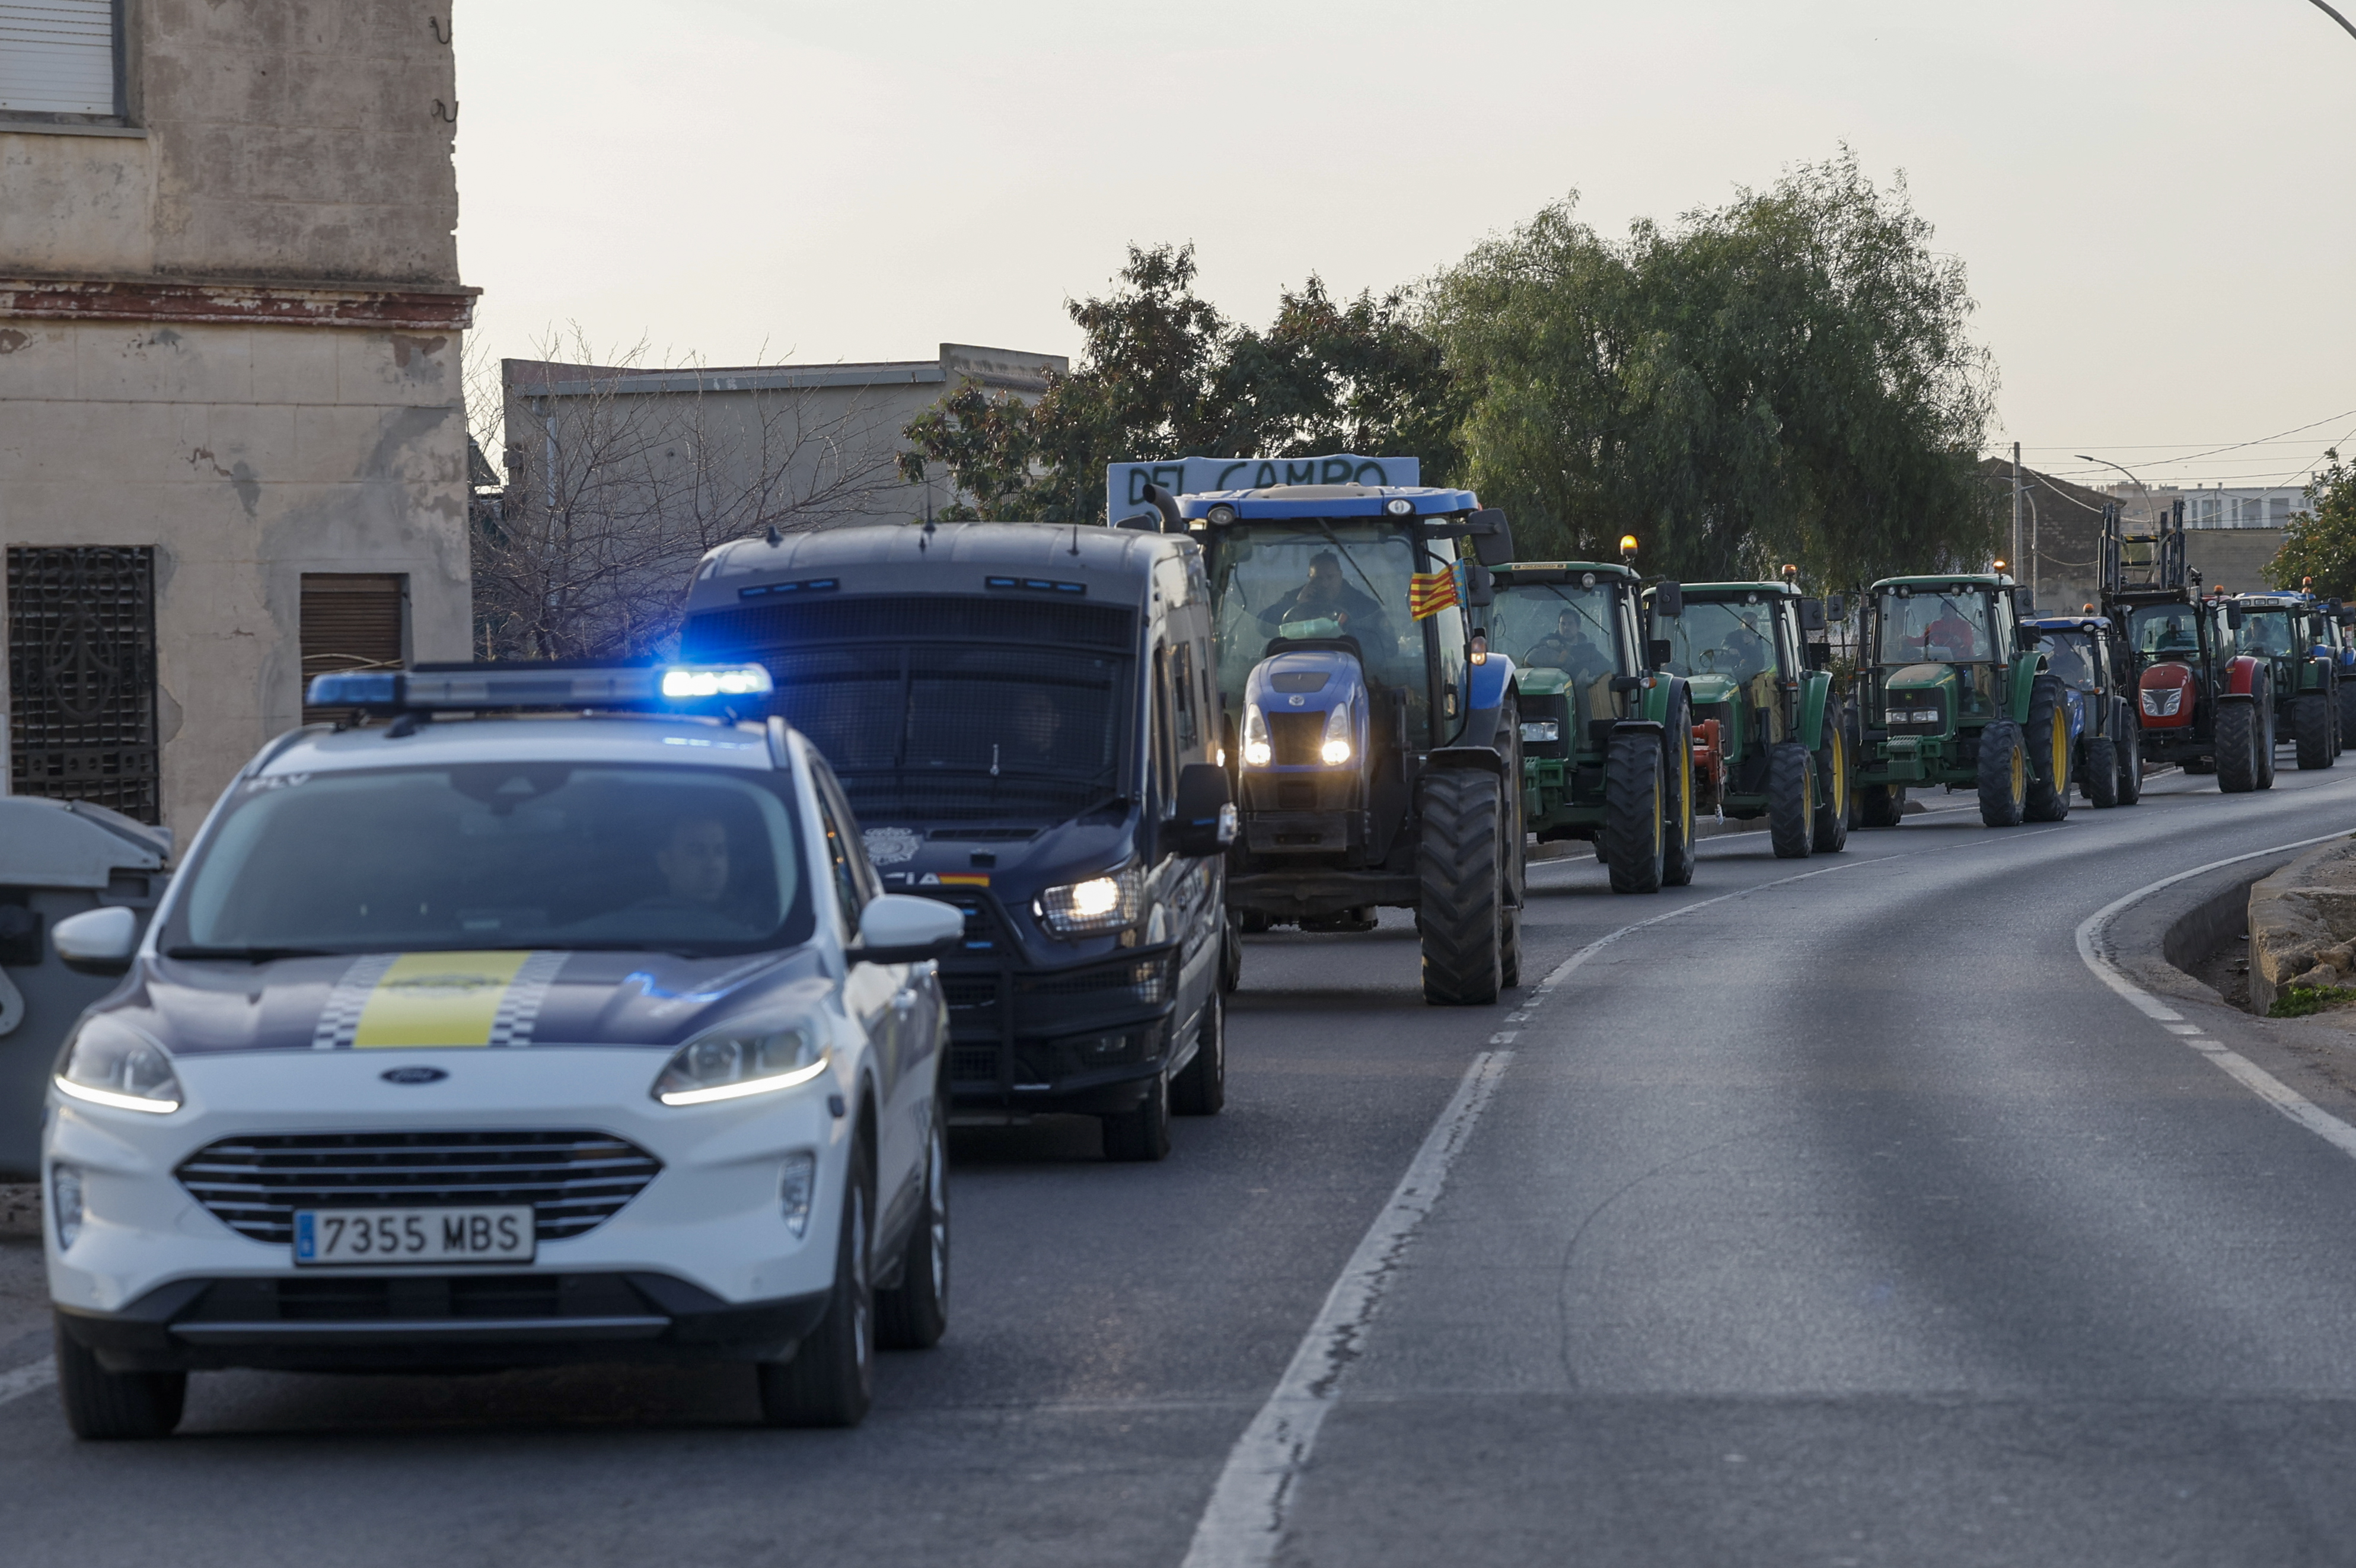 Huelga de tractores, en directo: carreteras cortadas en Madrid, Cataluña, Murcia, Valladolid, Valencia, Extremadura y el resto de España por las protestas de los agricultores hoy